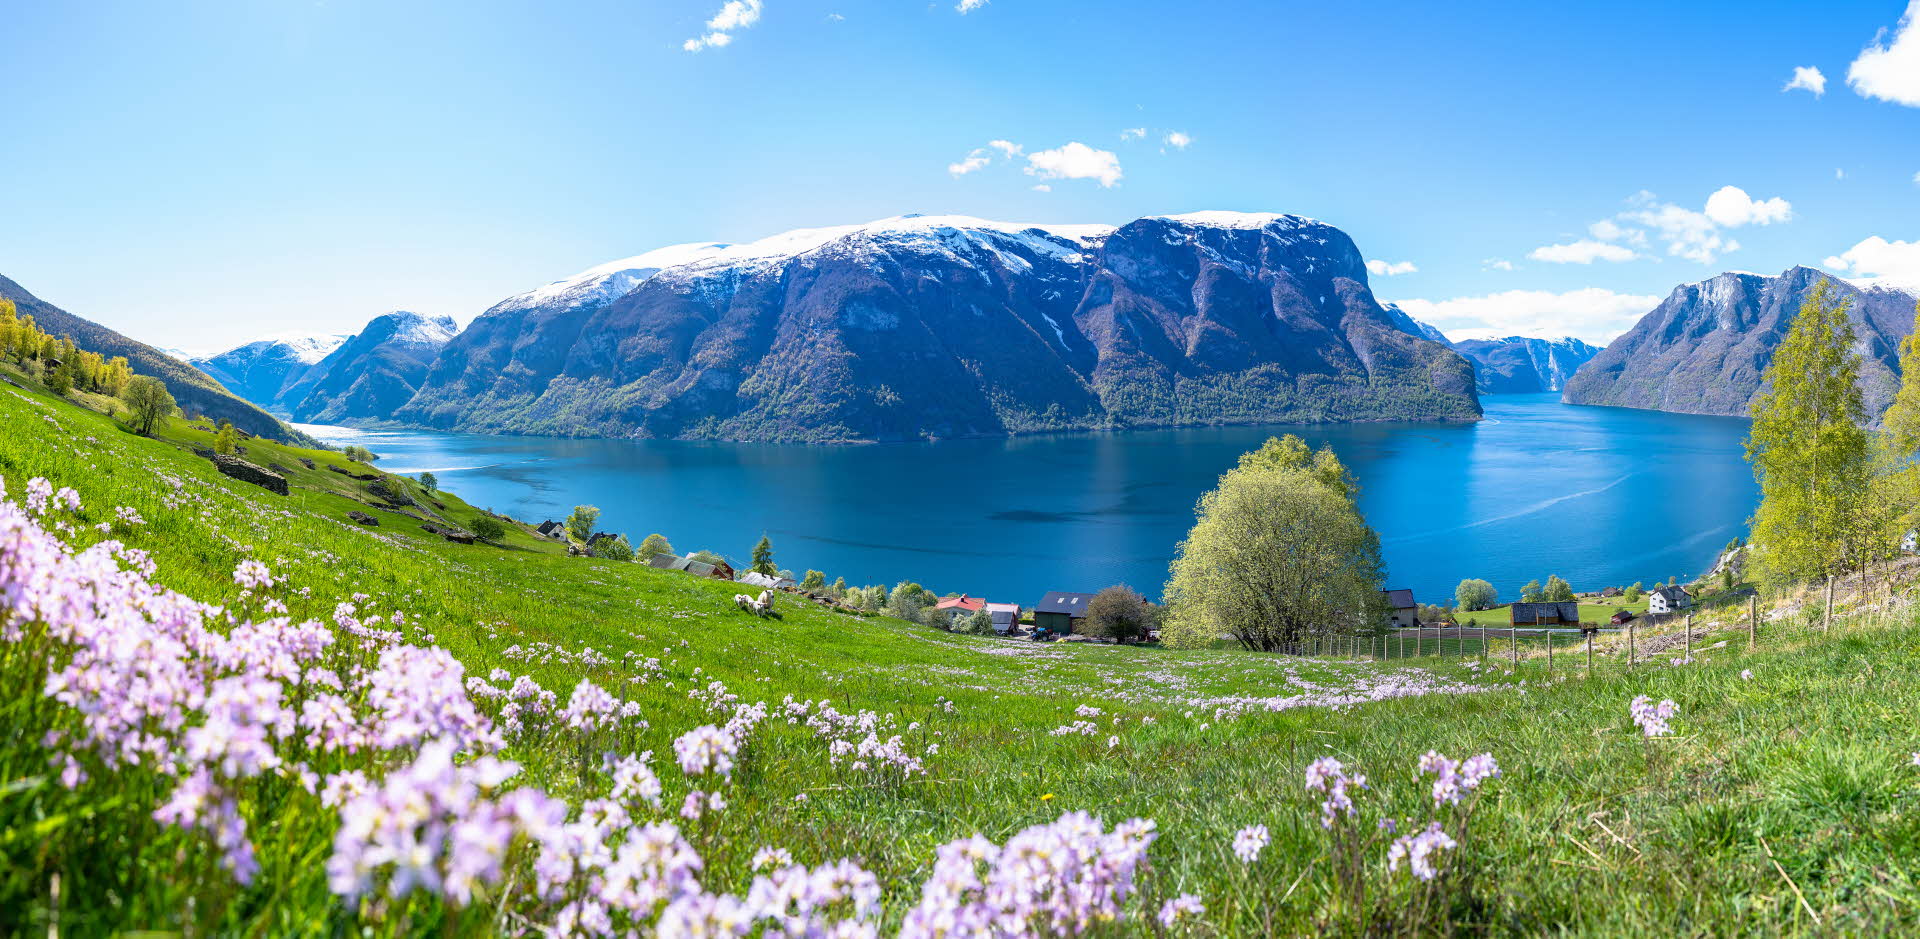 俯瞰艾于兰绿色的、鲜花盛开的草地和上面的绵羊，同时还能看到被联合国教科文组织收入名录的挪威艾于兰峡湾